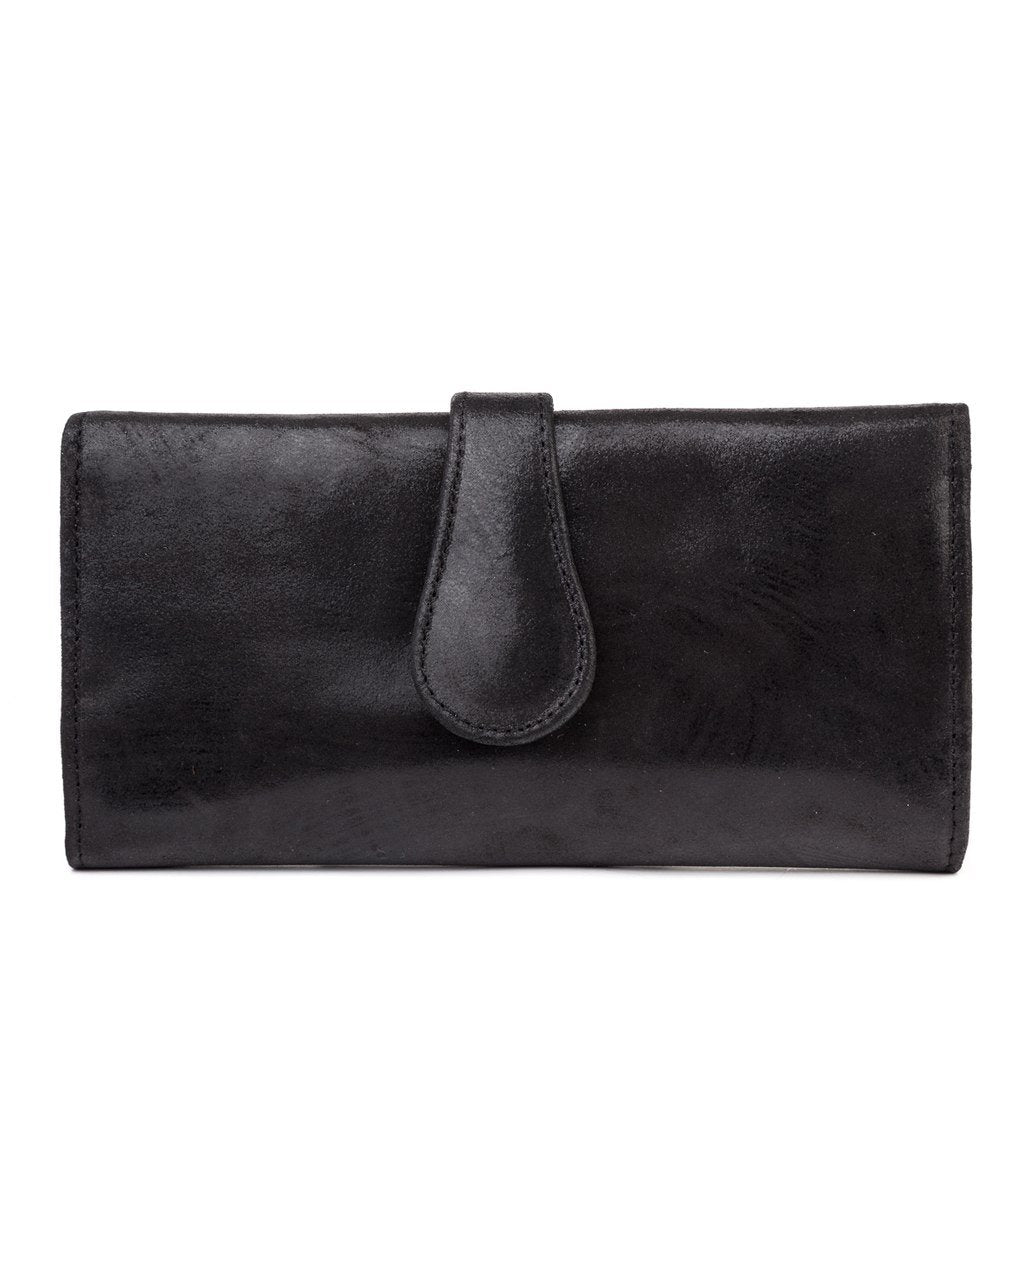 Mila Trifold Wallet: Black – CoFi Leathers